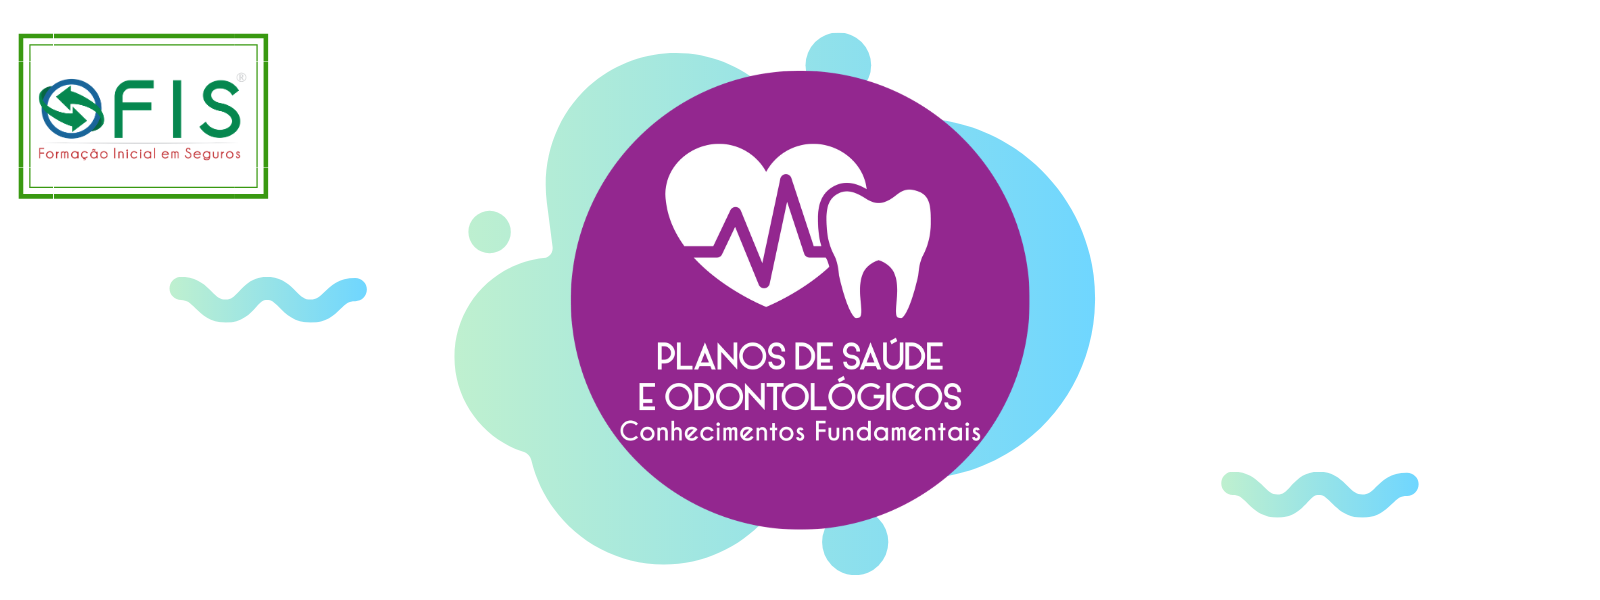 Banner - Planos de Saúde e Odontológicos: Conhecimentos Fundamentais